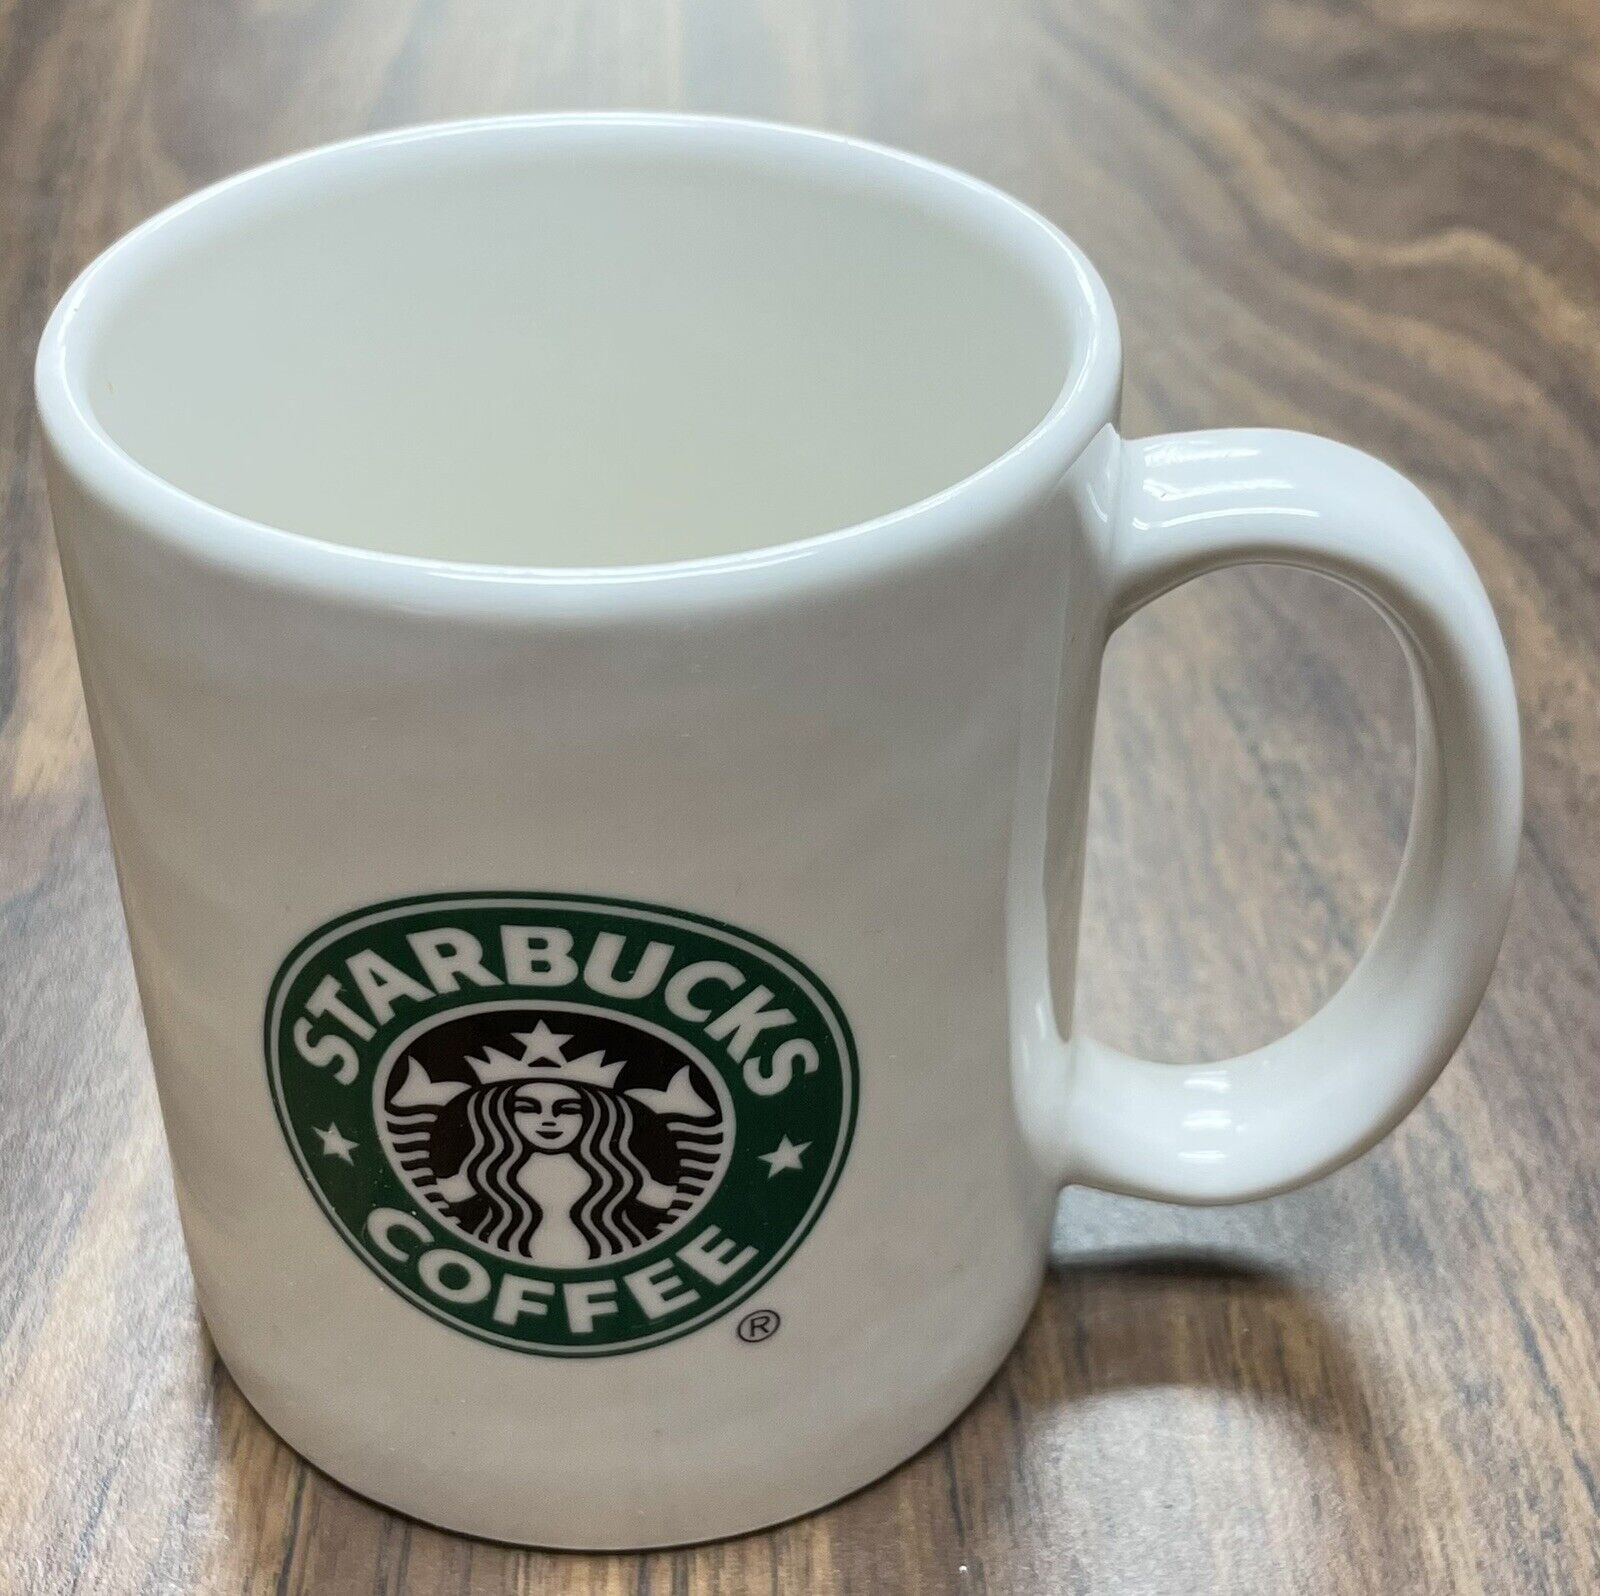 Starbucks Coffee Mug 2004 White W/Green Mermaid Logo